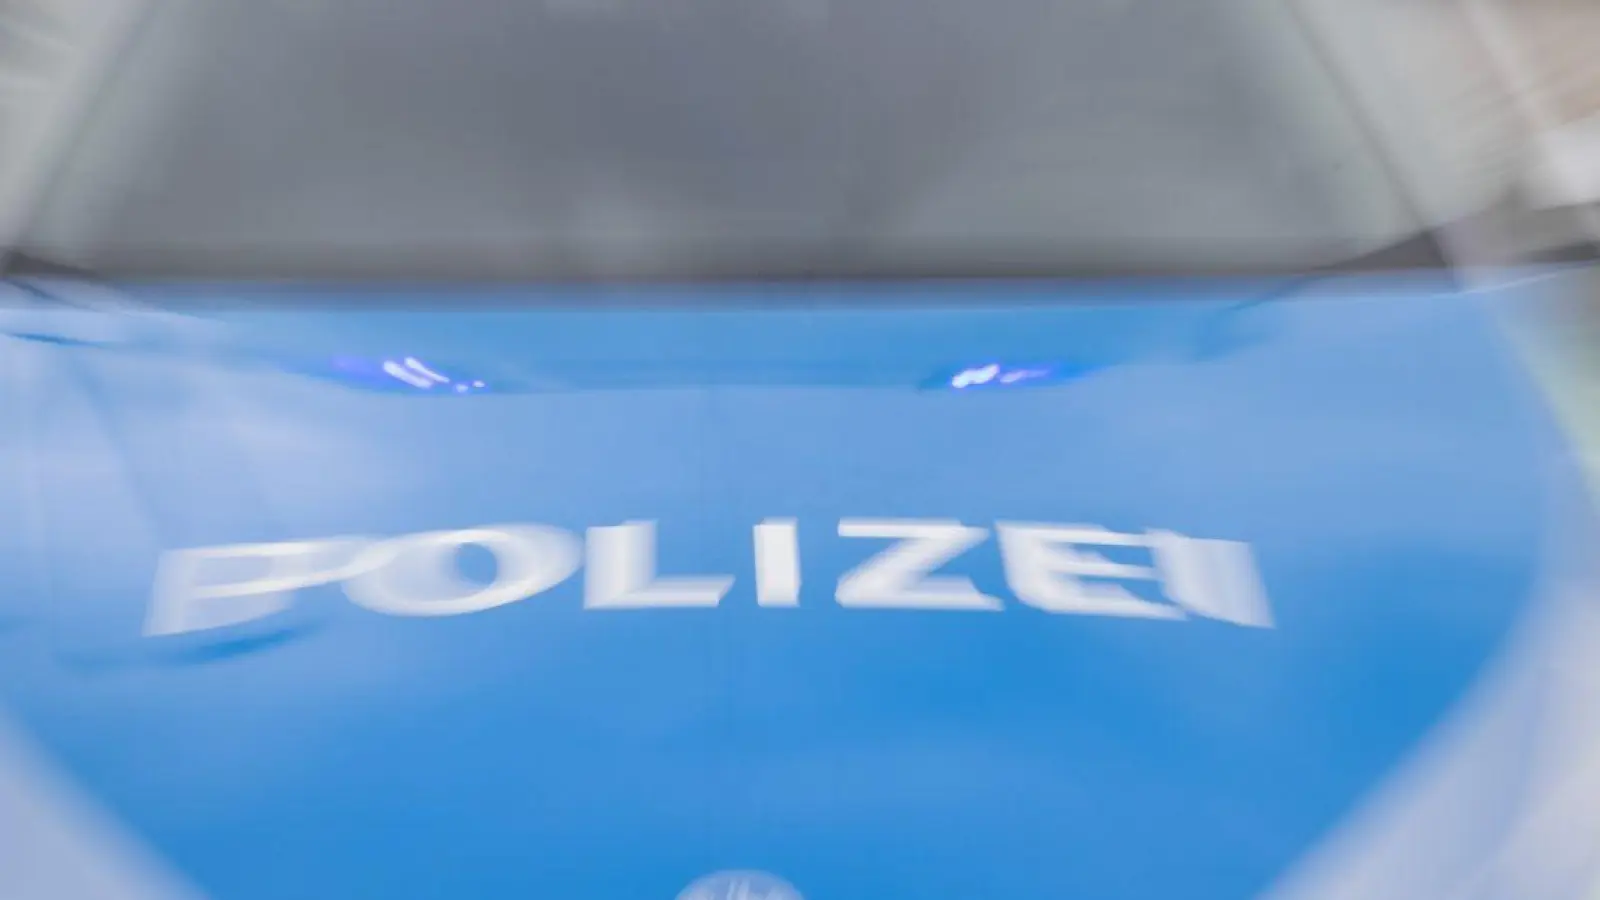 Ein Streifenwagen der Polizei mit eingeschaltetem Blaulicht. (Foto: Daniel Karmann/dpa/Symbolbild)